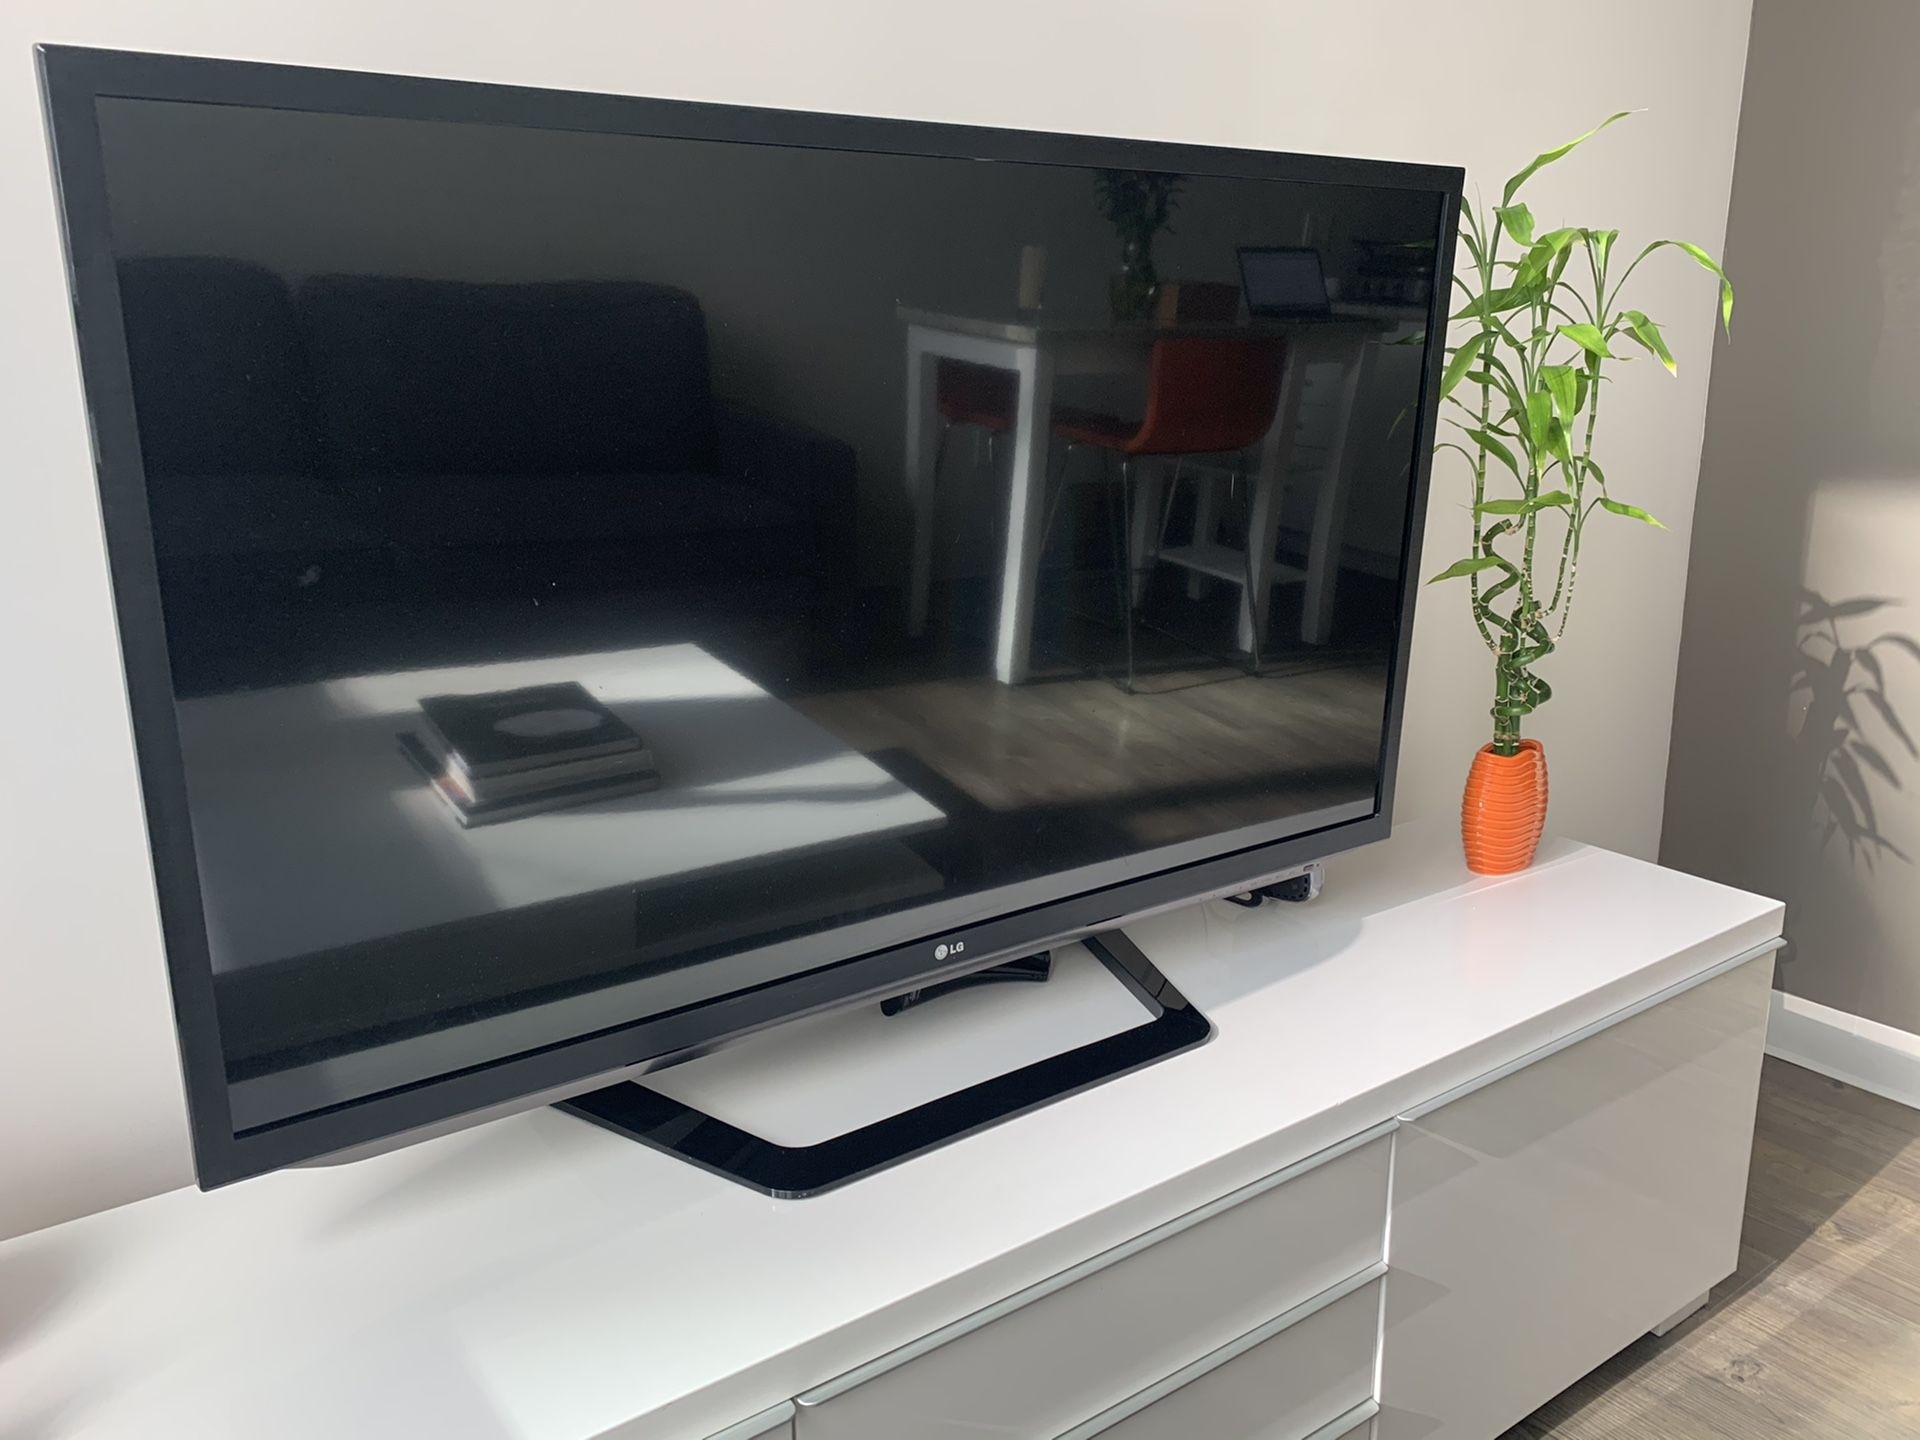 LG 55“ inch TV